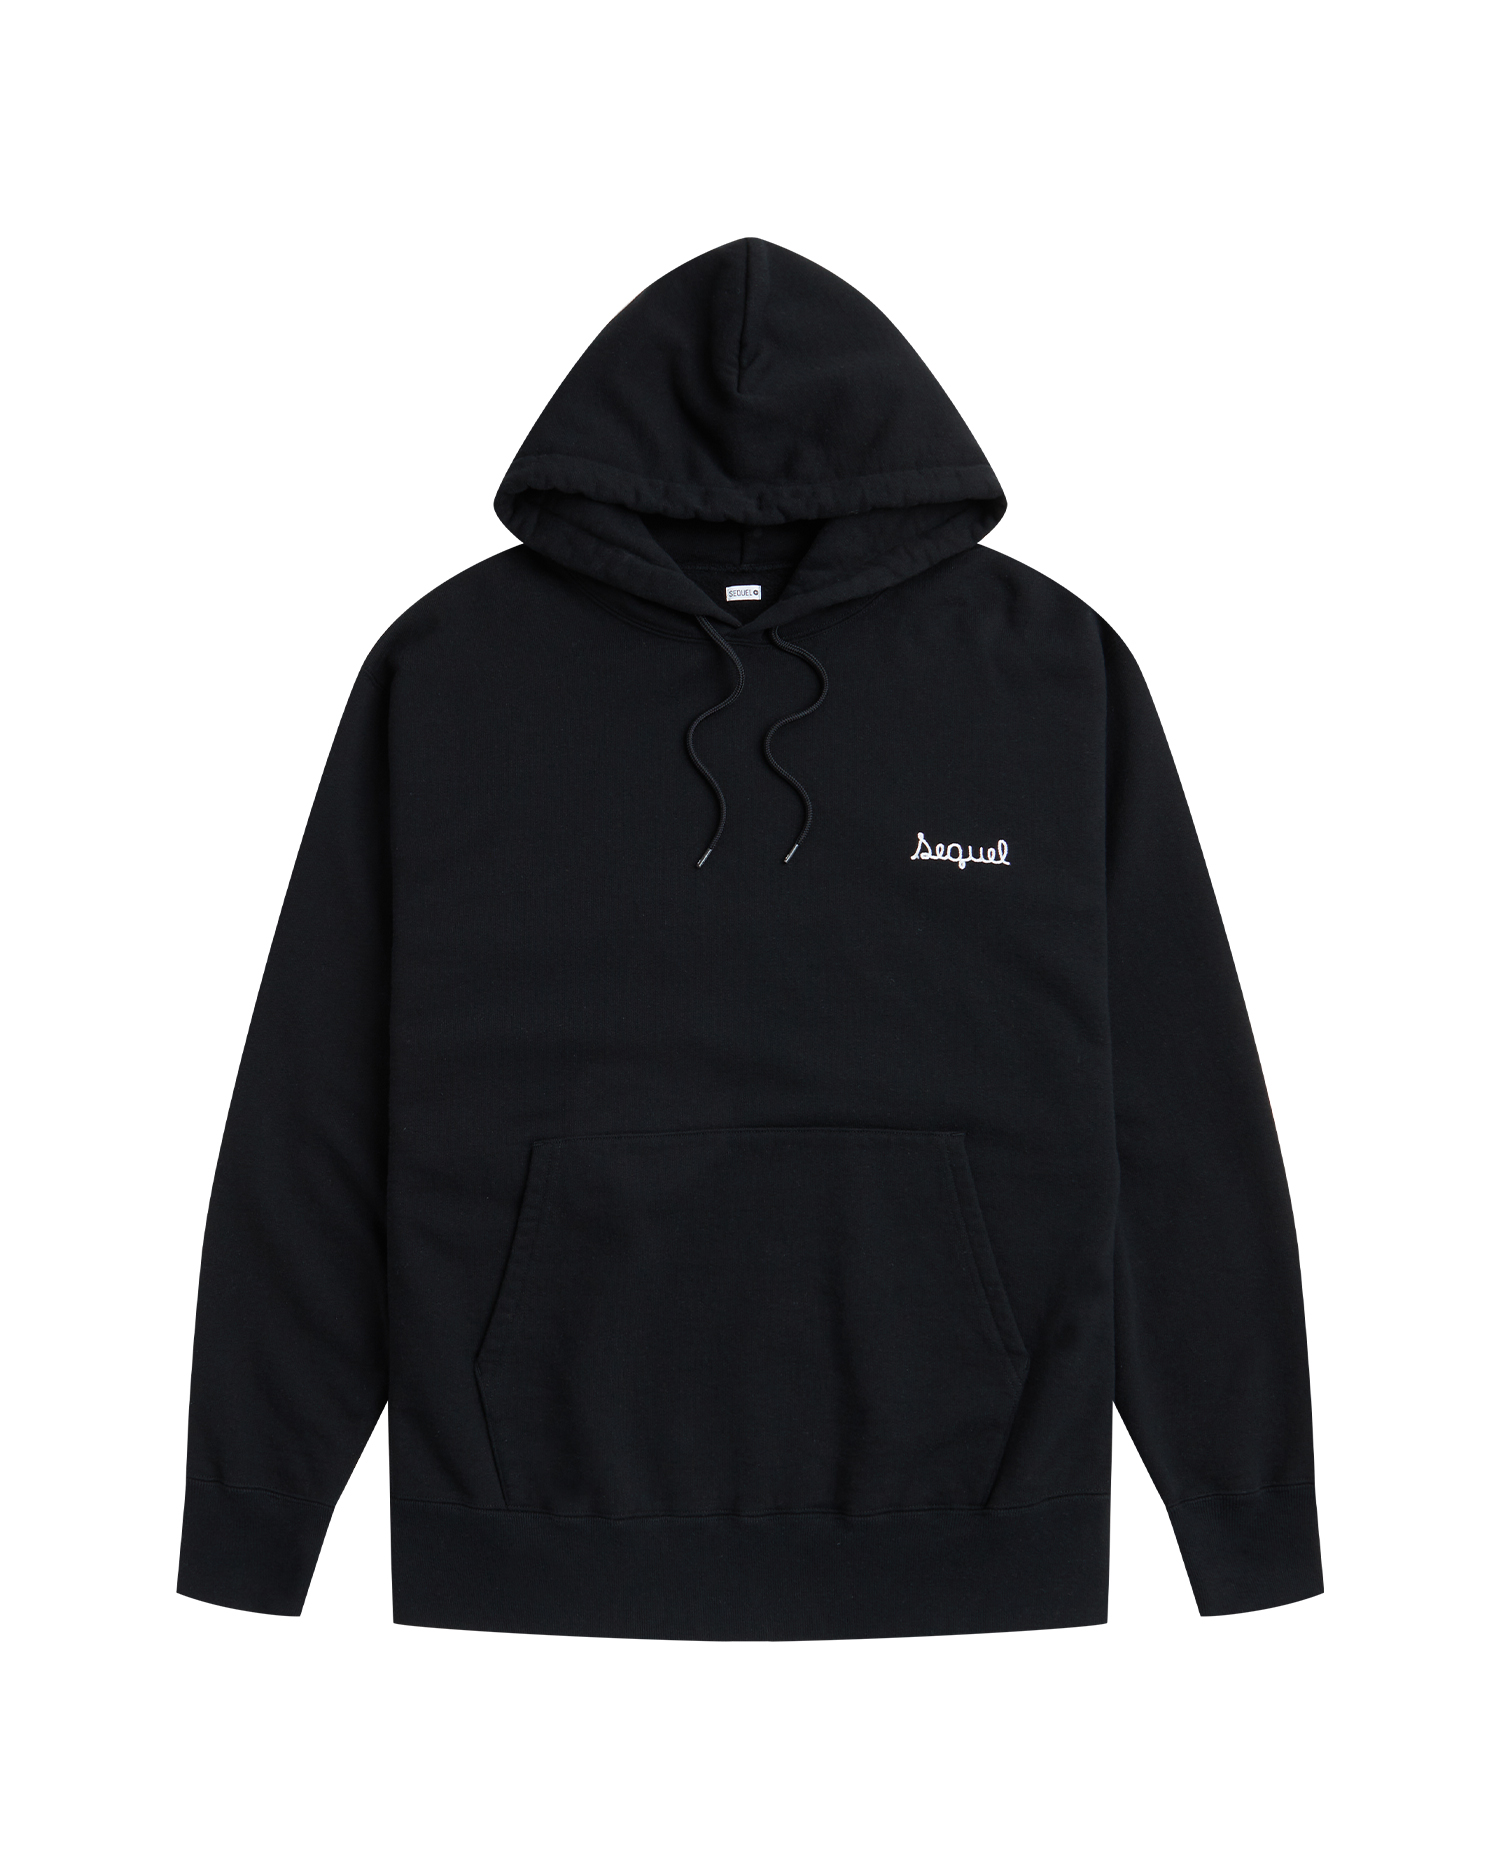 sequel black hoodie